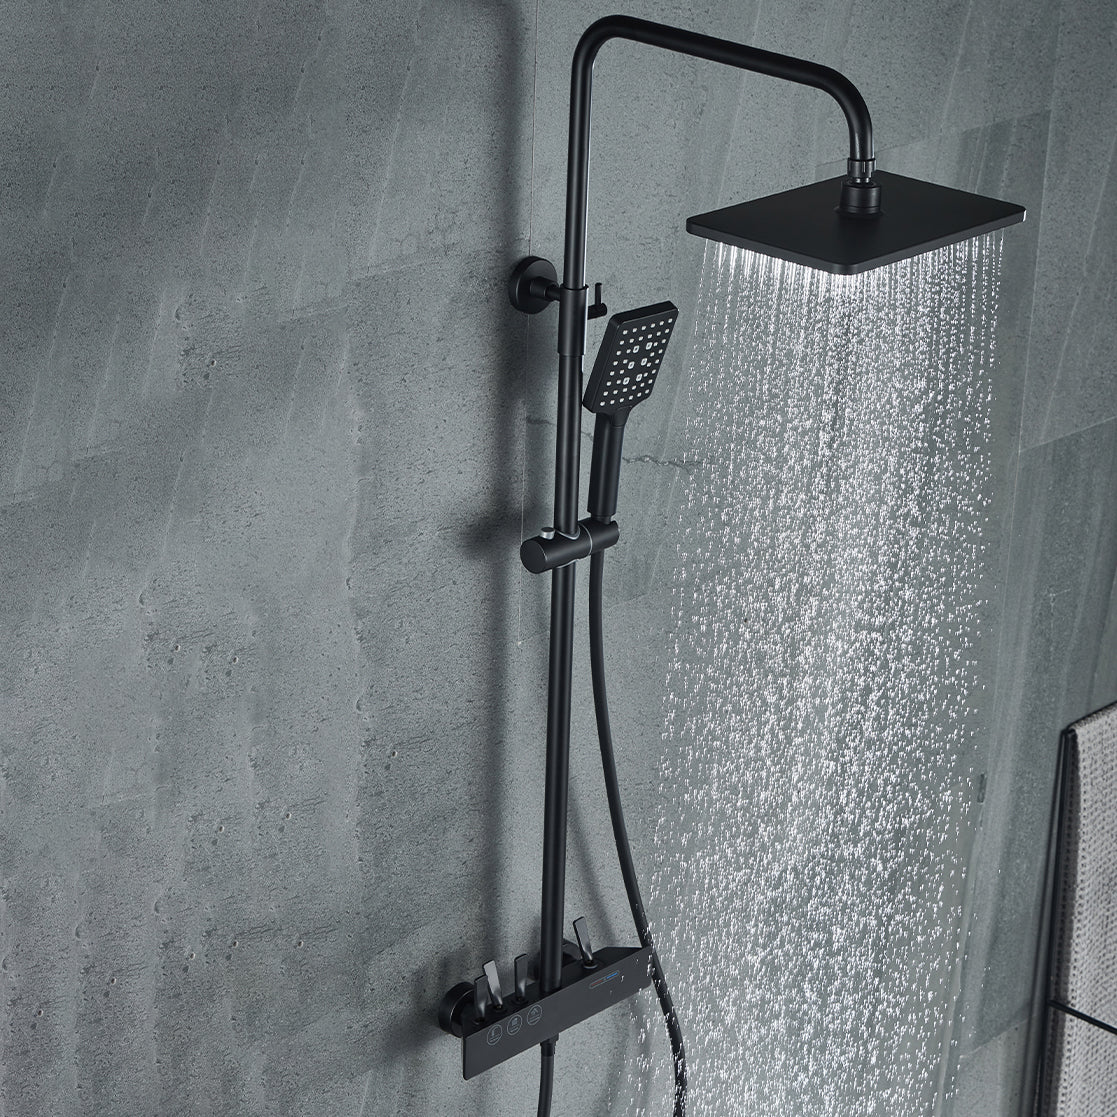 Modern Shower Trim Brass Slide Bar Included Adjustable Shower Head Shower System Black Clearhalo 'Bathroom Remodel & Bathroom Fixtures' 'Home Improvement' 'home_improvement' 'home_improvement_shower_faucets' 'Shower Faucets & Systems' 'shower_faucets' 'Showers & Bathtubs Plumbing' 'Showers & Bathtubs' 6627394